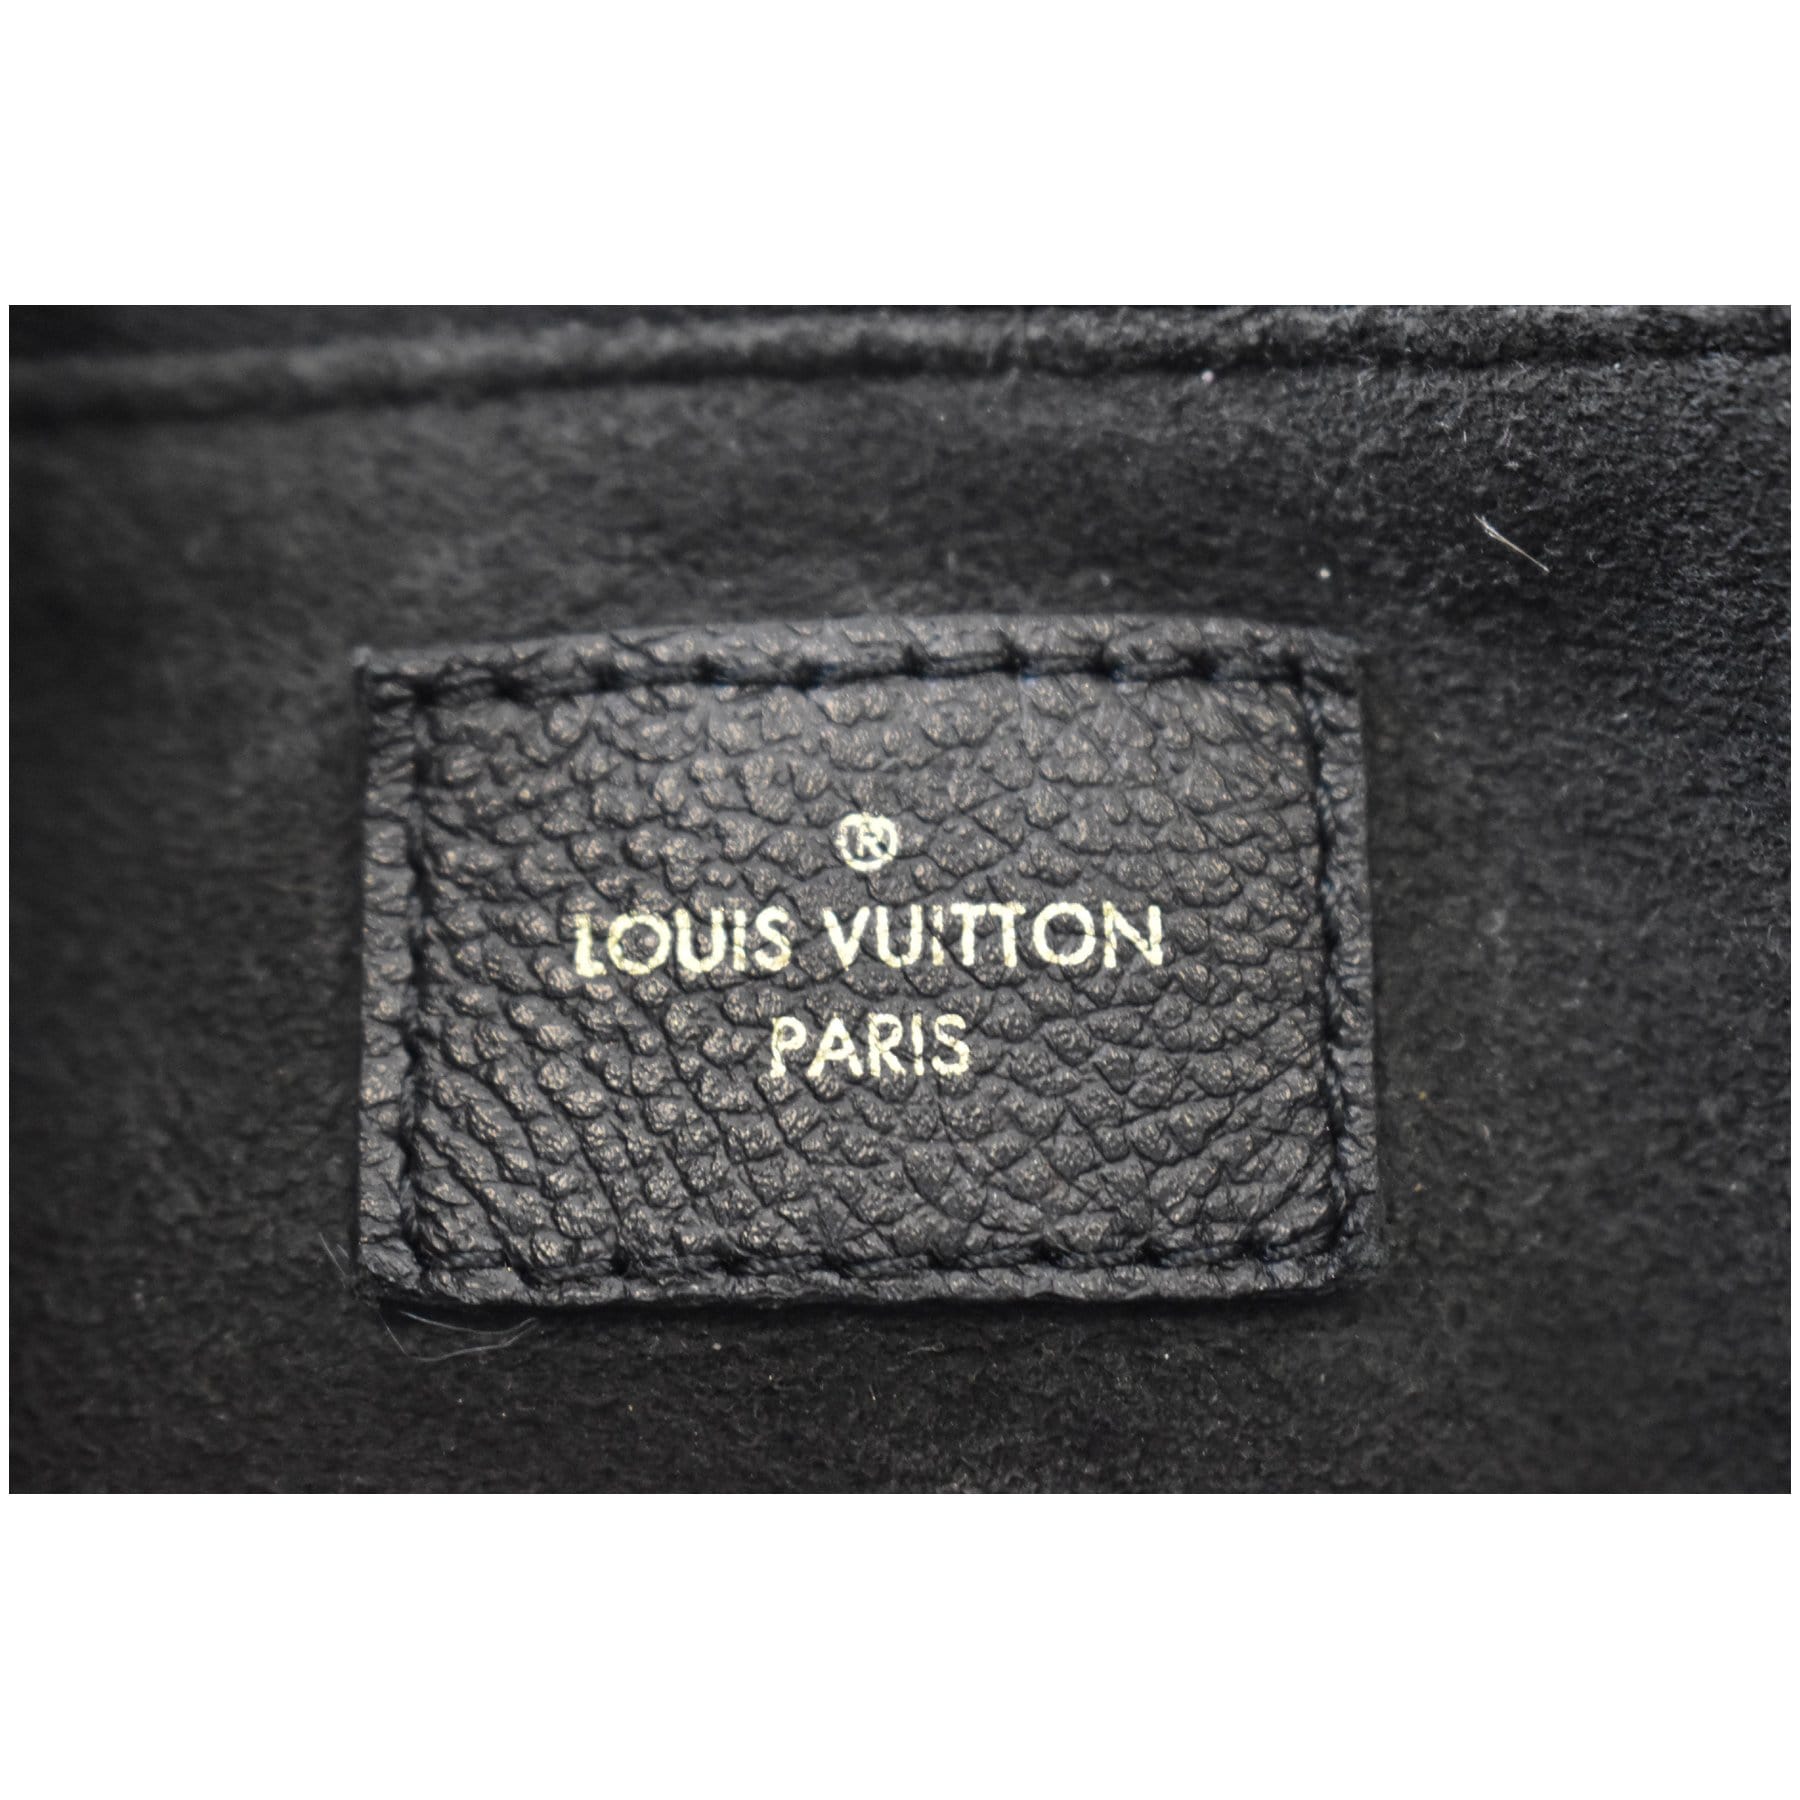 Louis Vuitton Empreinte Bangle, White Gold Grey. Size XXL